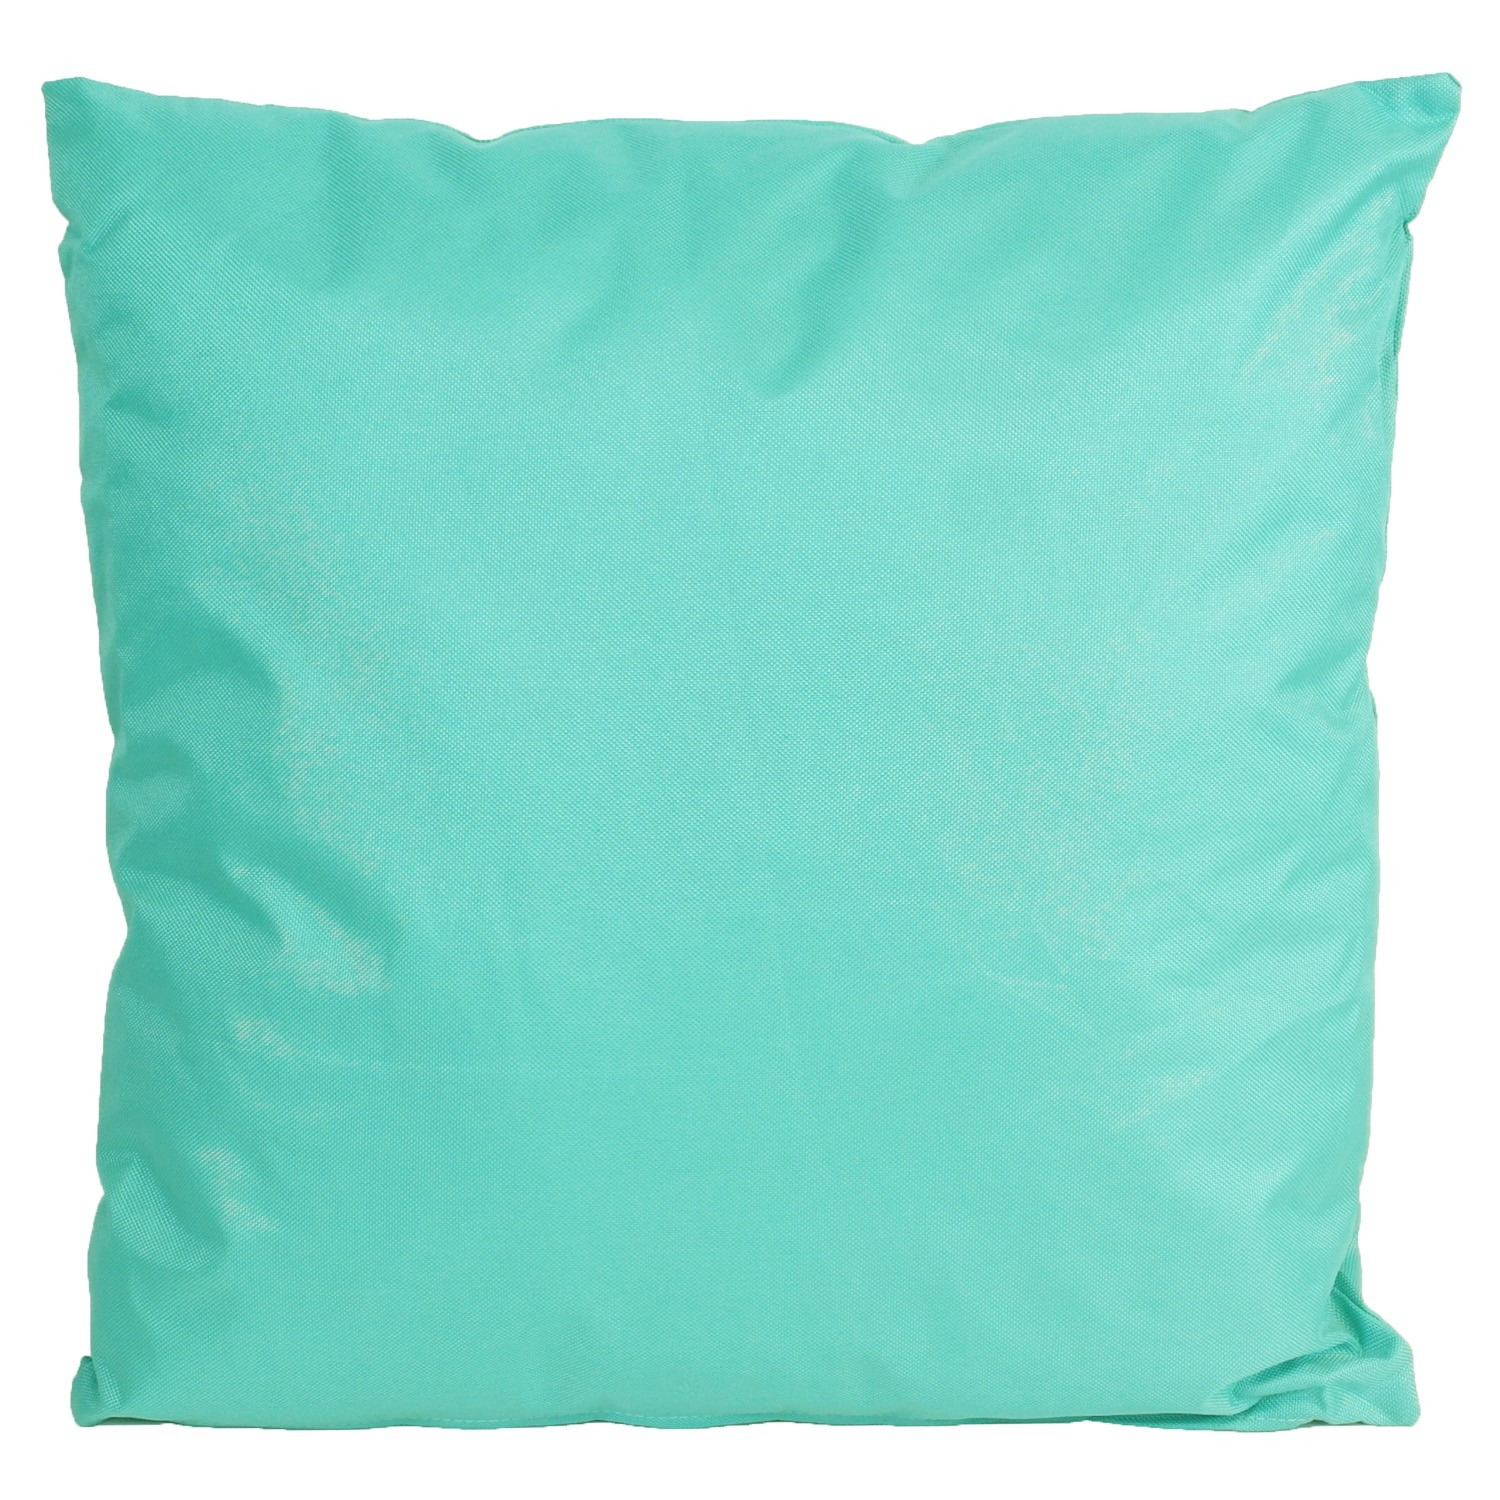 1x Bank-Sier kussens voor binnen en buiten in de kleur aqua blauw 45 x 45 cm